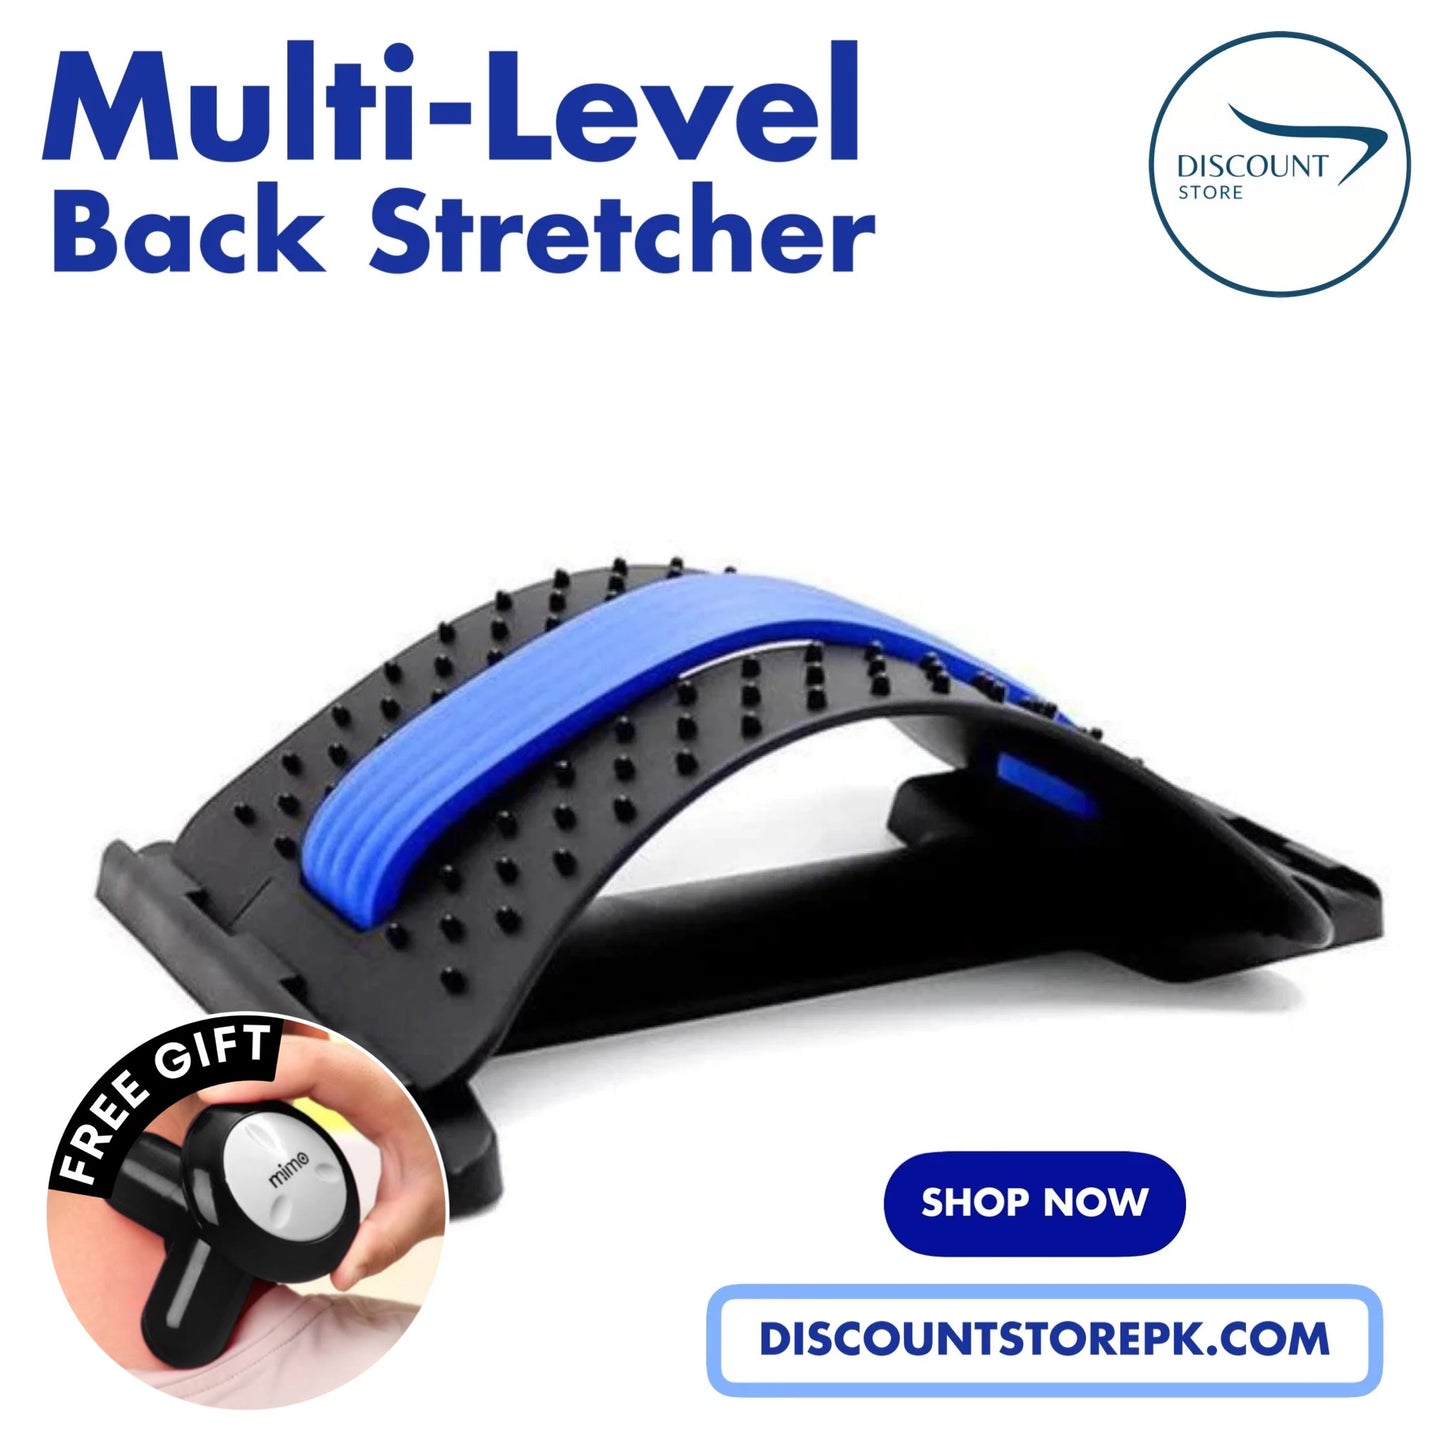 Multi-Level Adjustable Posture Corrector & Back Stretcher | Buy 1 Get 1 Free